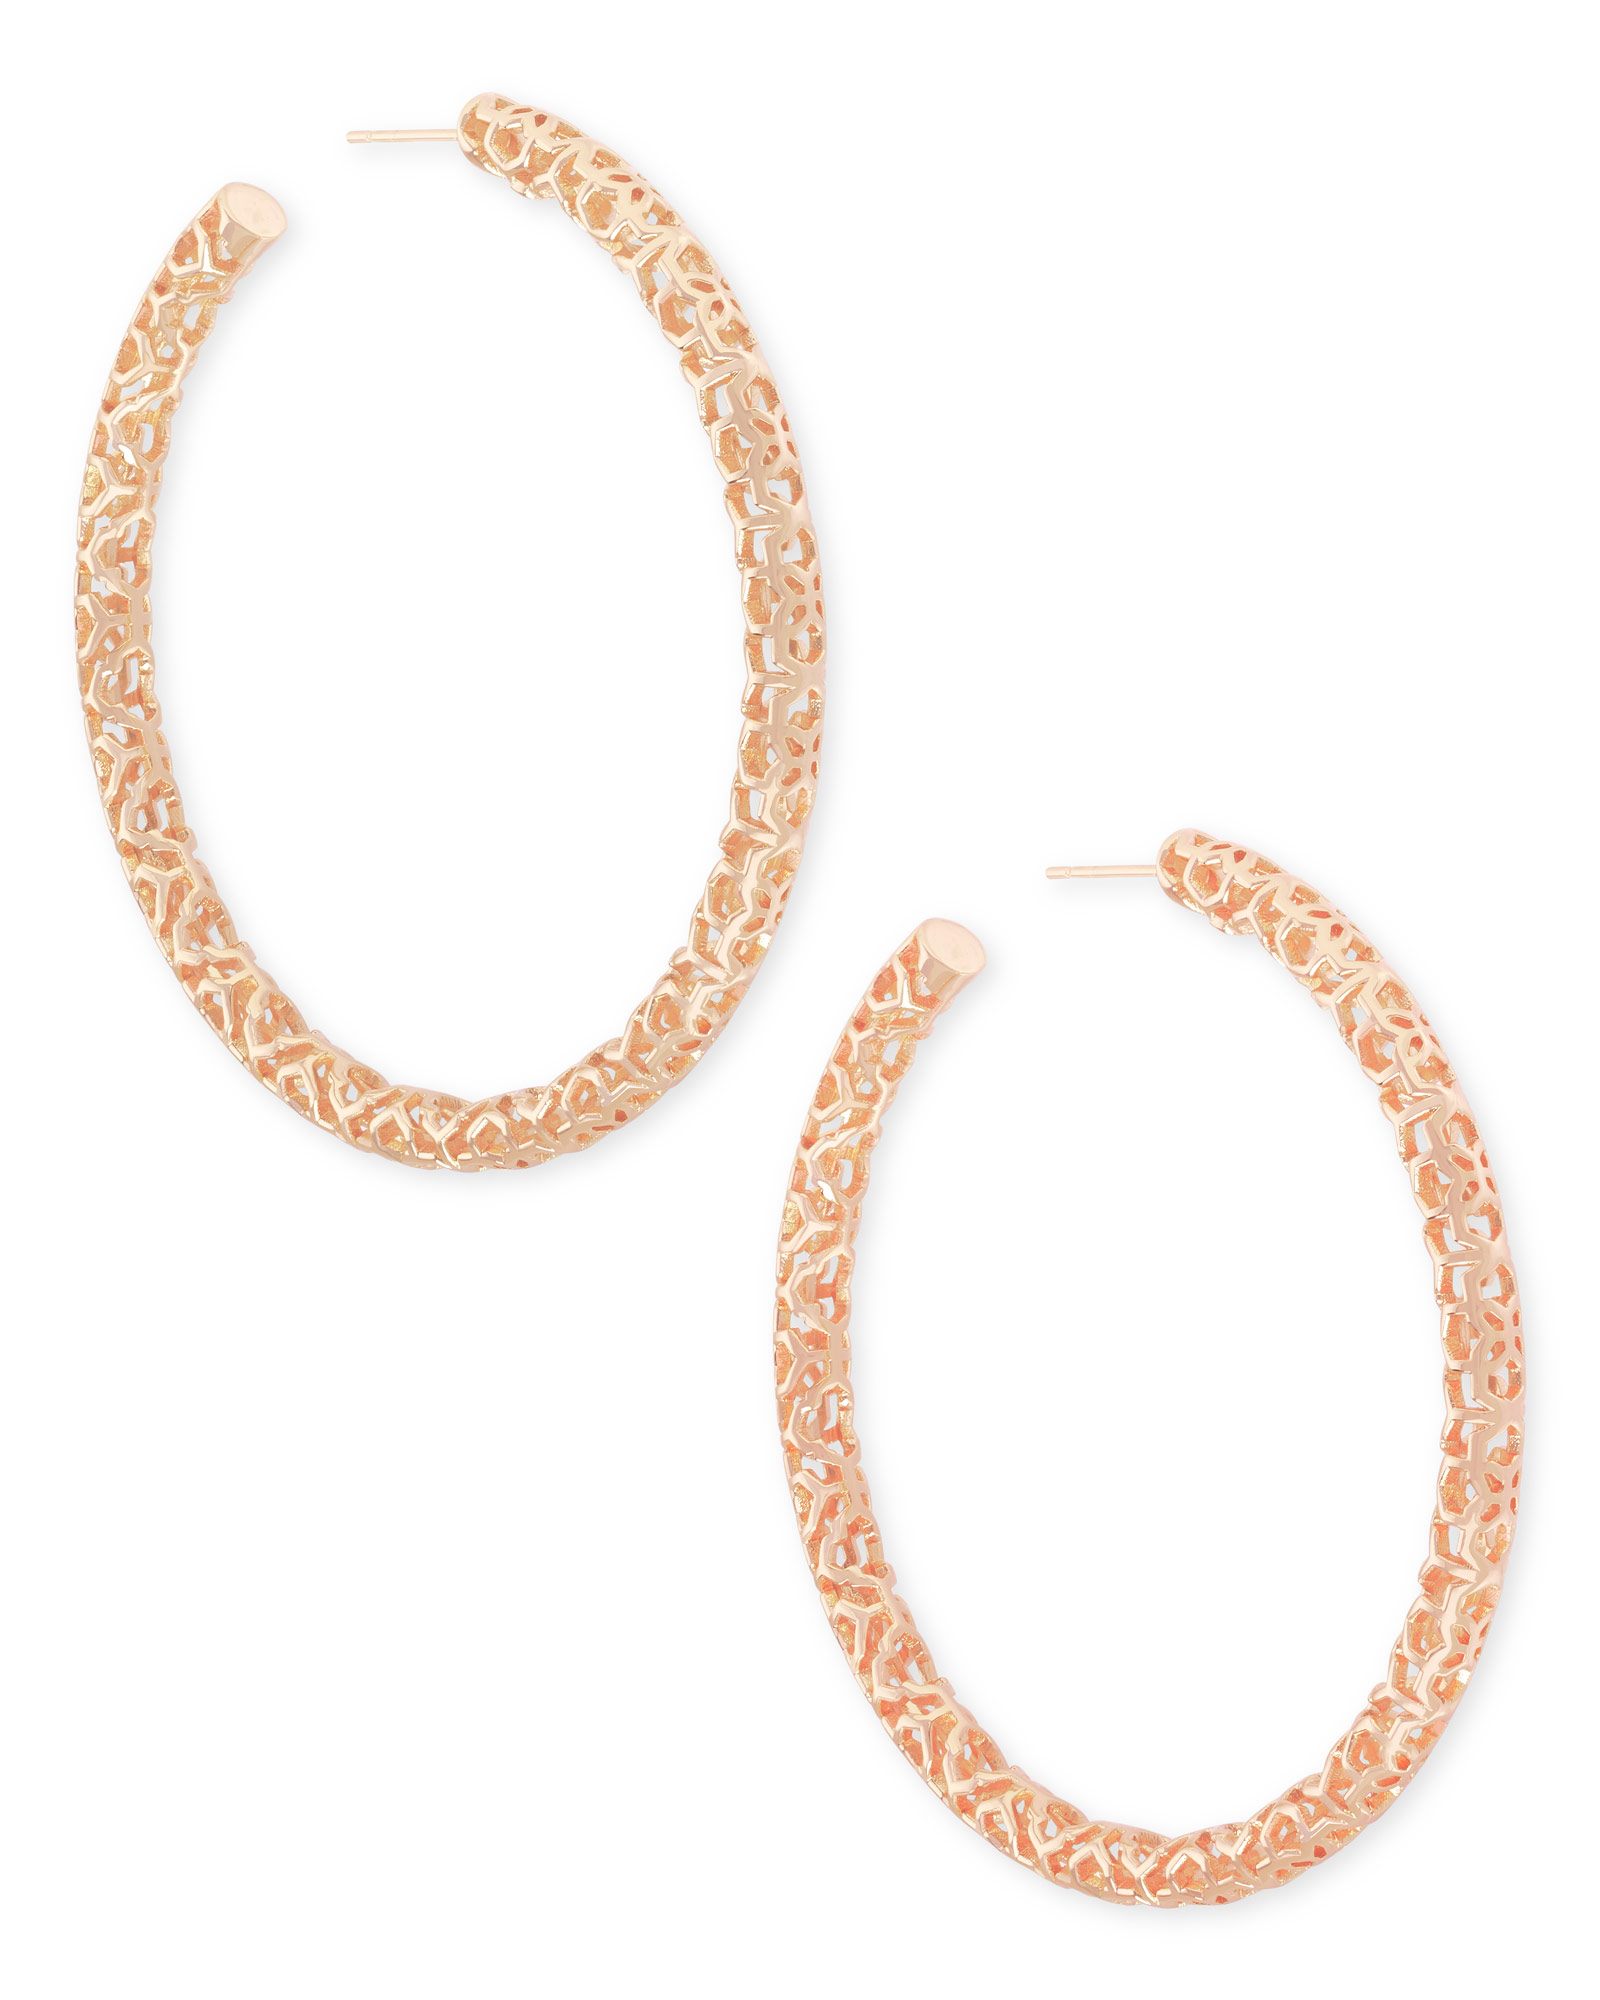 Maggie Hoop Earrings in Rose Gold Filigree | Kendra Scott